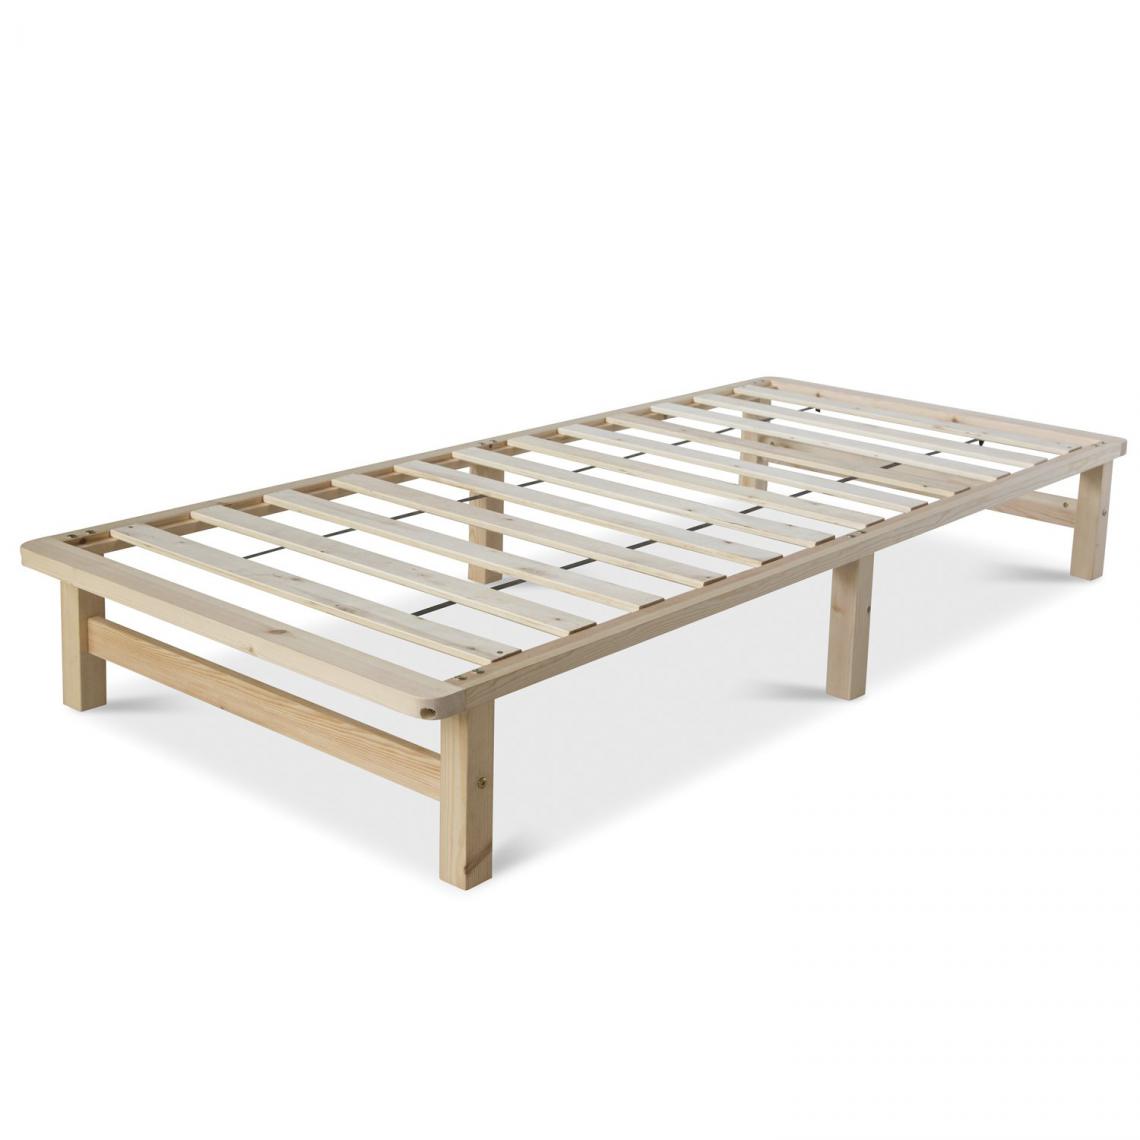 Decoshop26 - Cadre de lit palette en bois massif avec sommier à lattes 90x200cm LIT06189 - Lit enfant